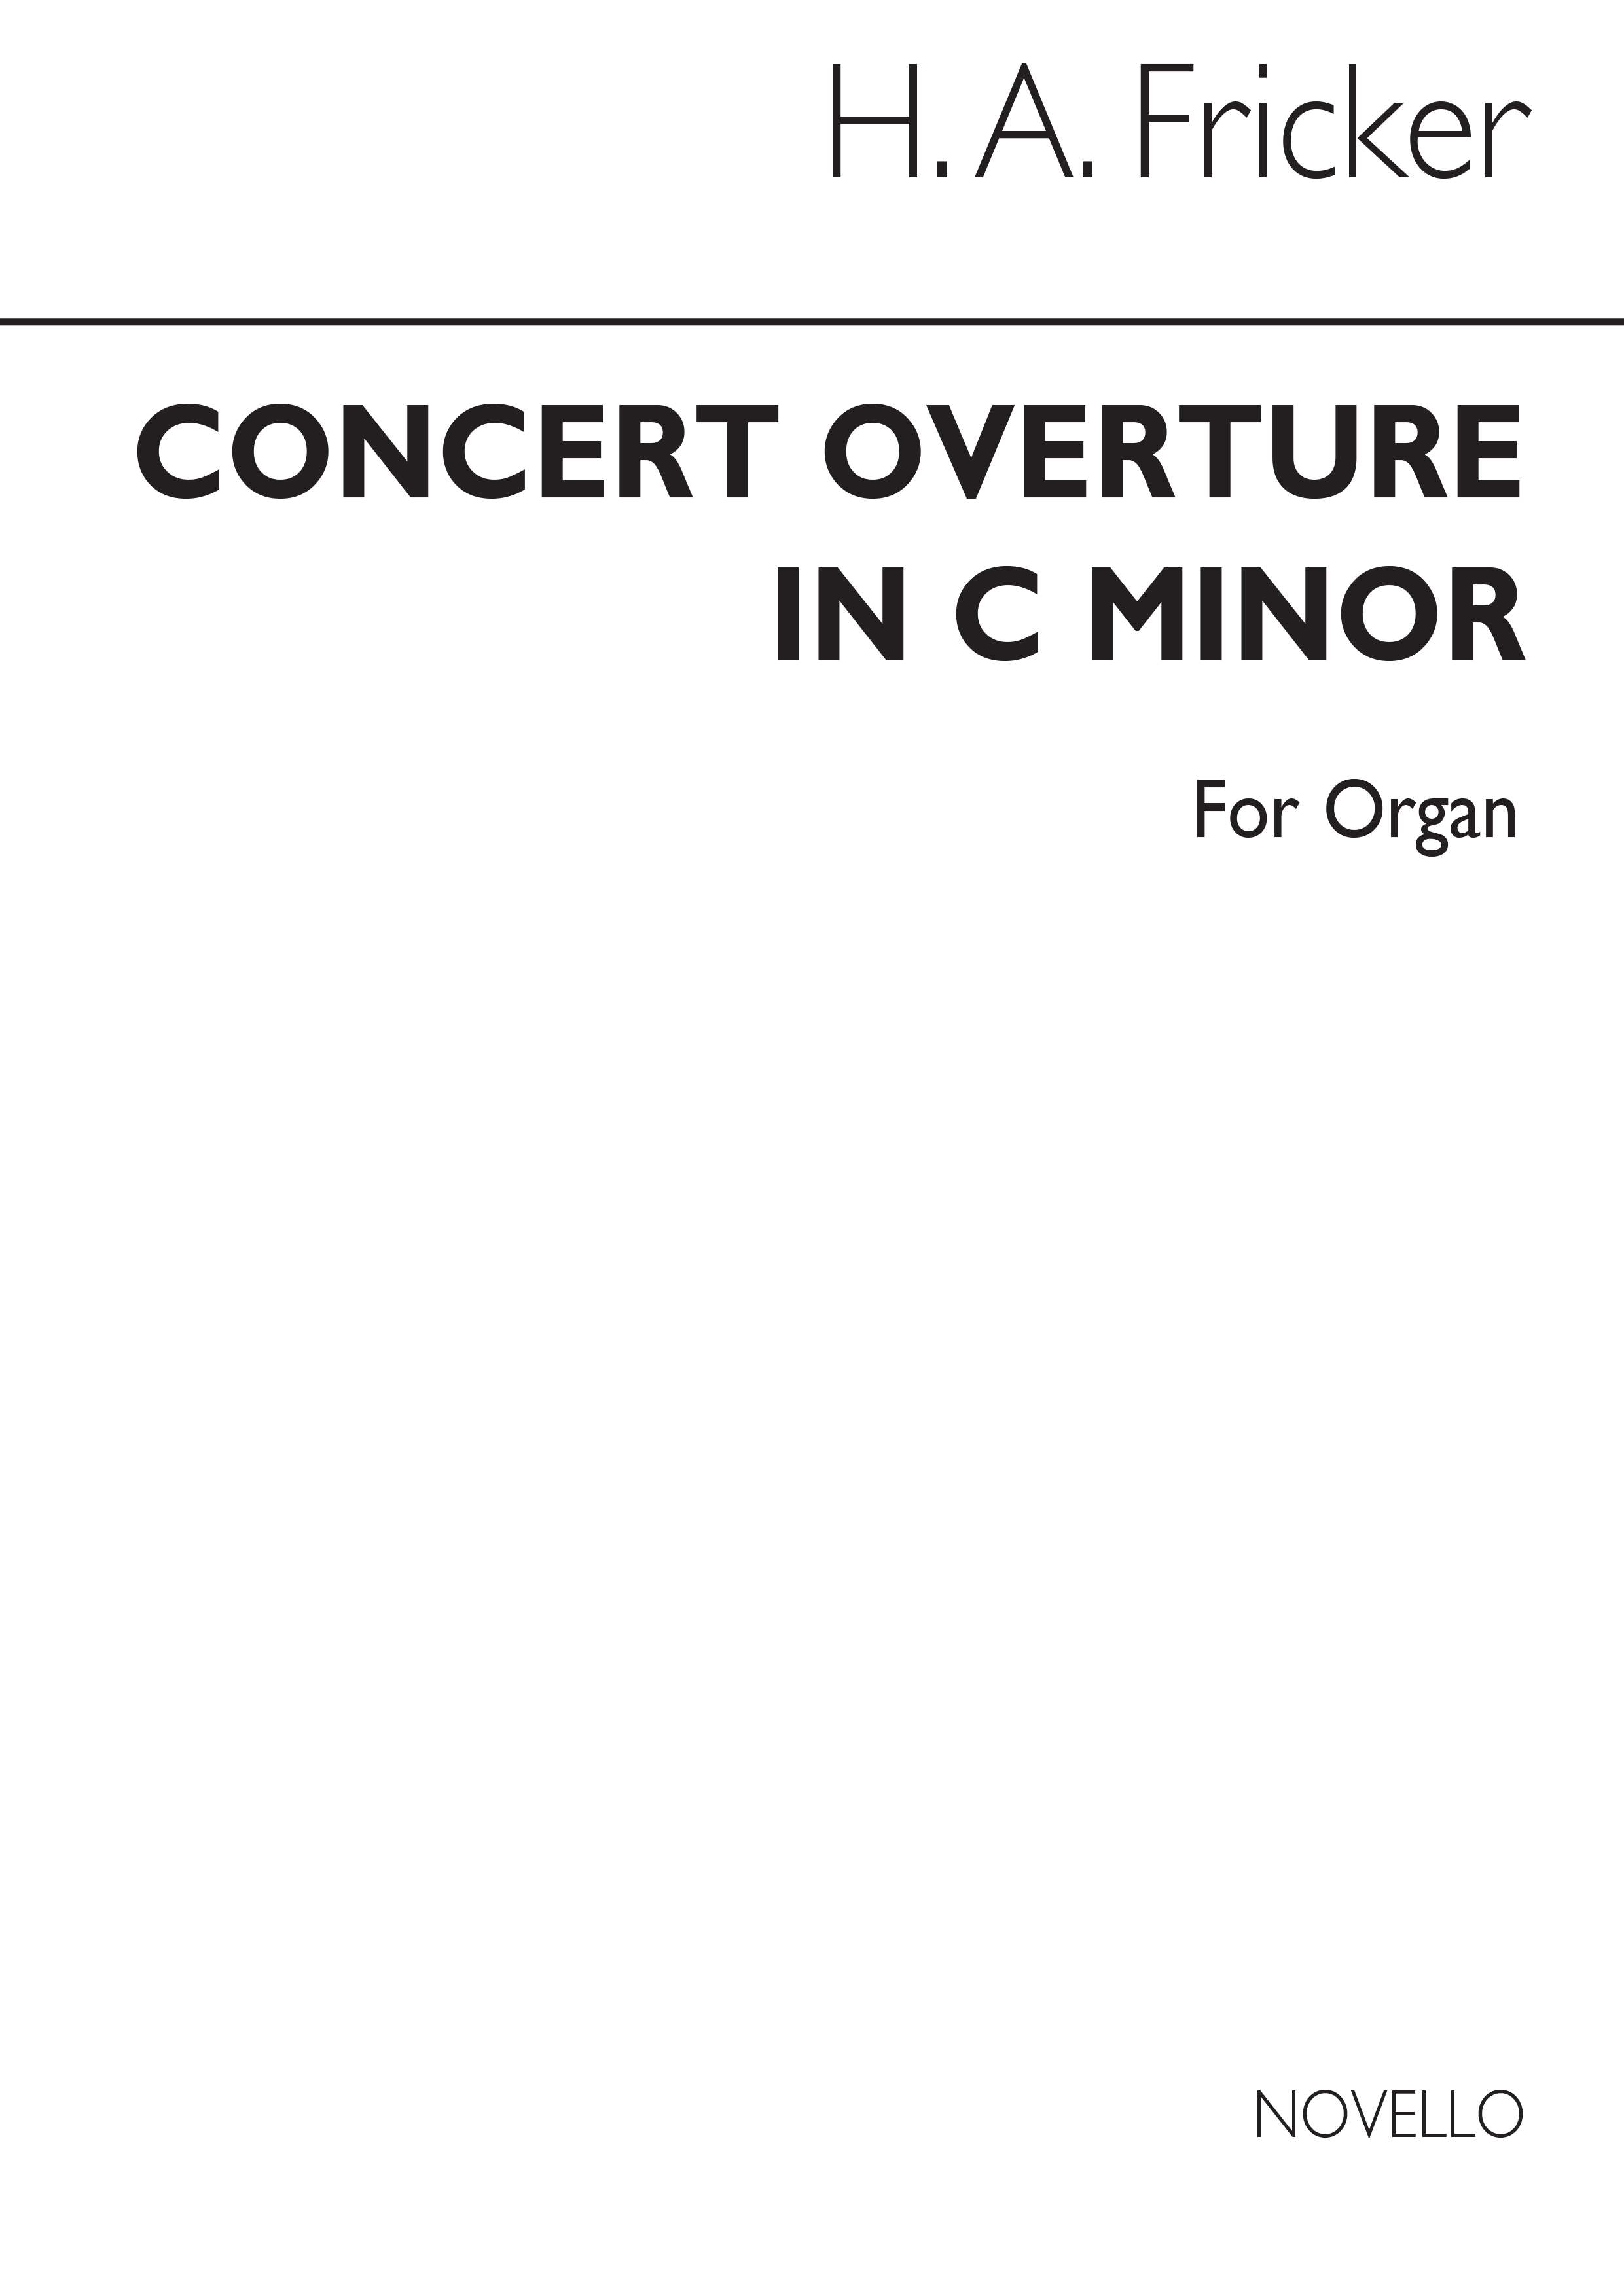 Herbert Fricker: Concert Overture In C Minor For Organ